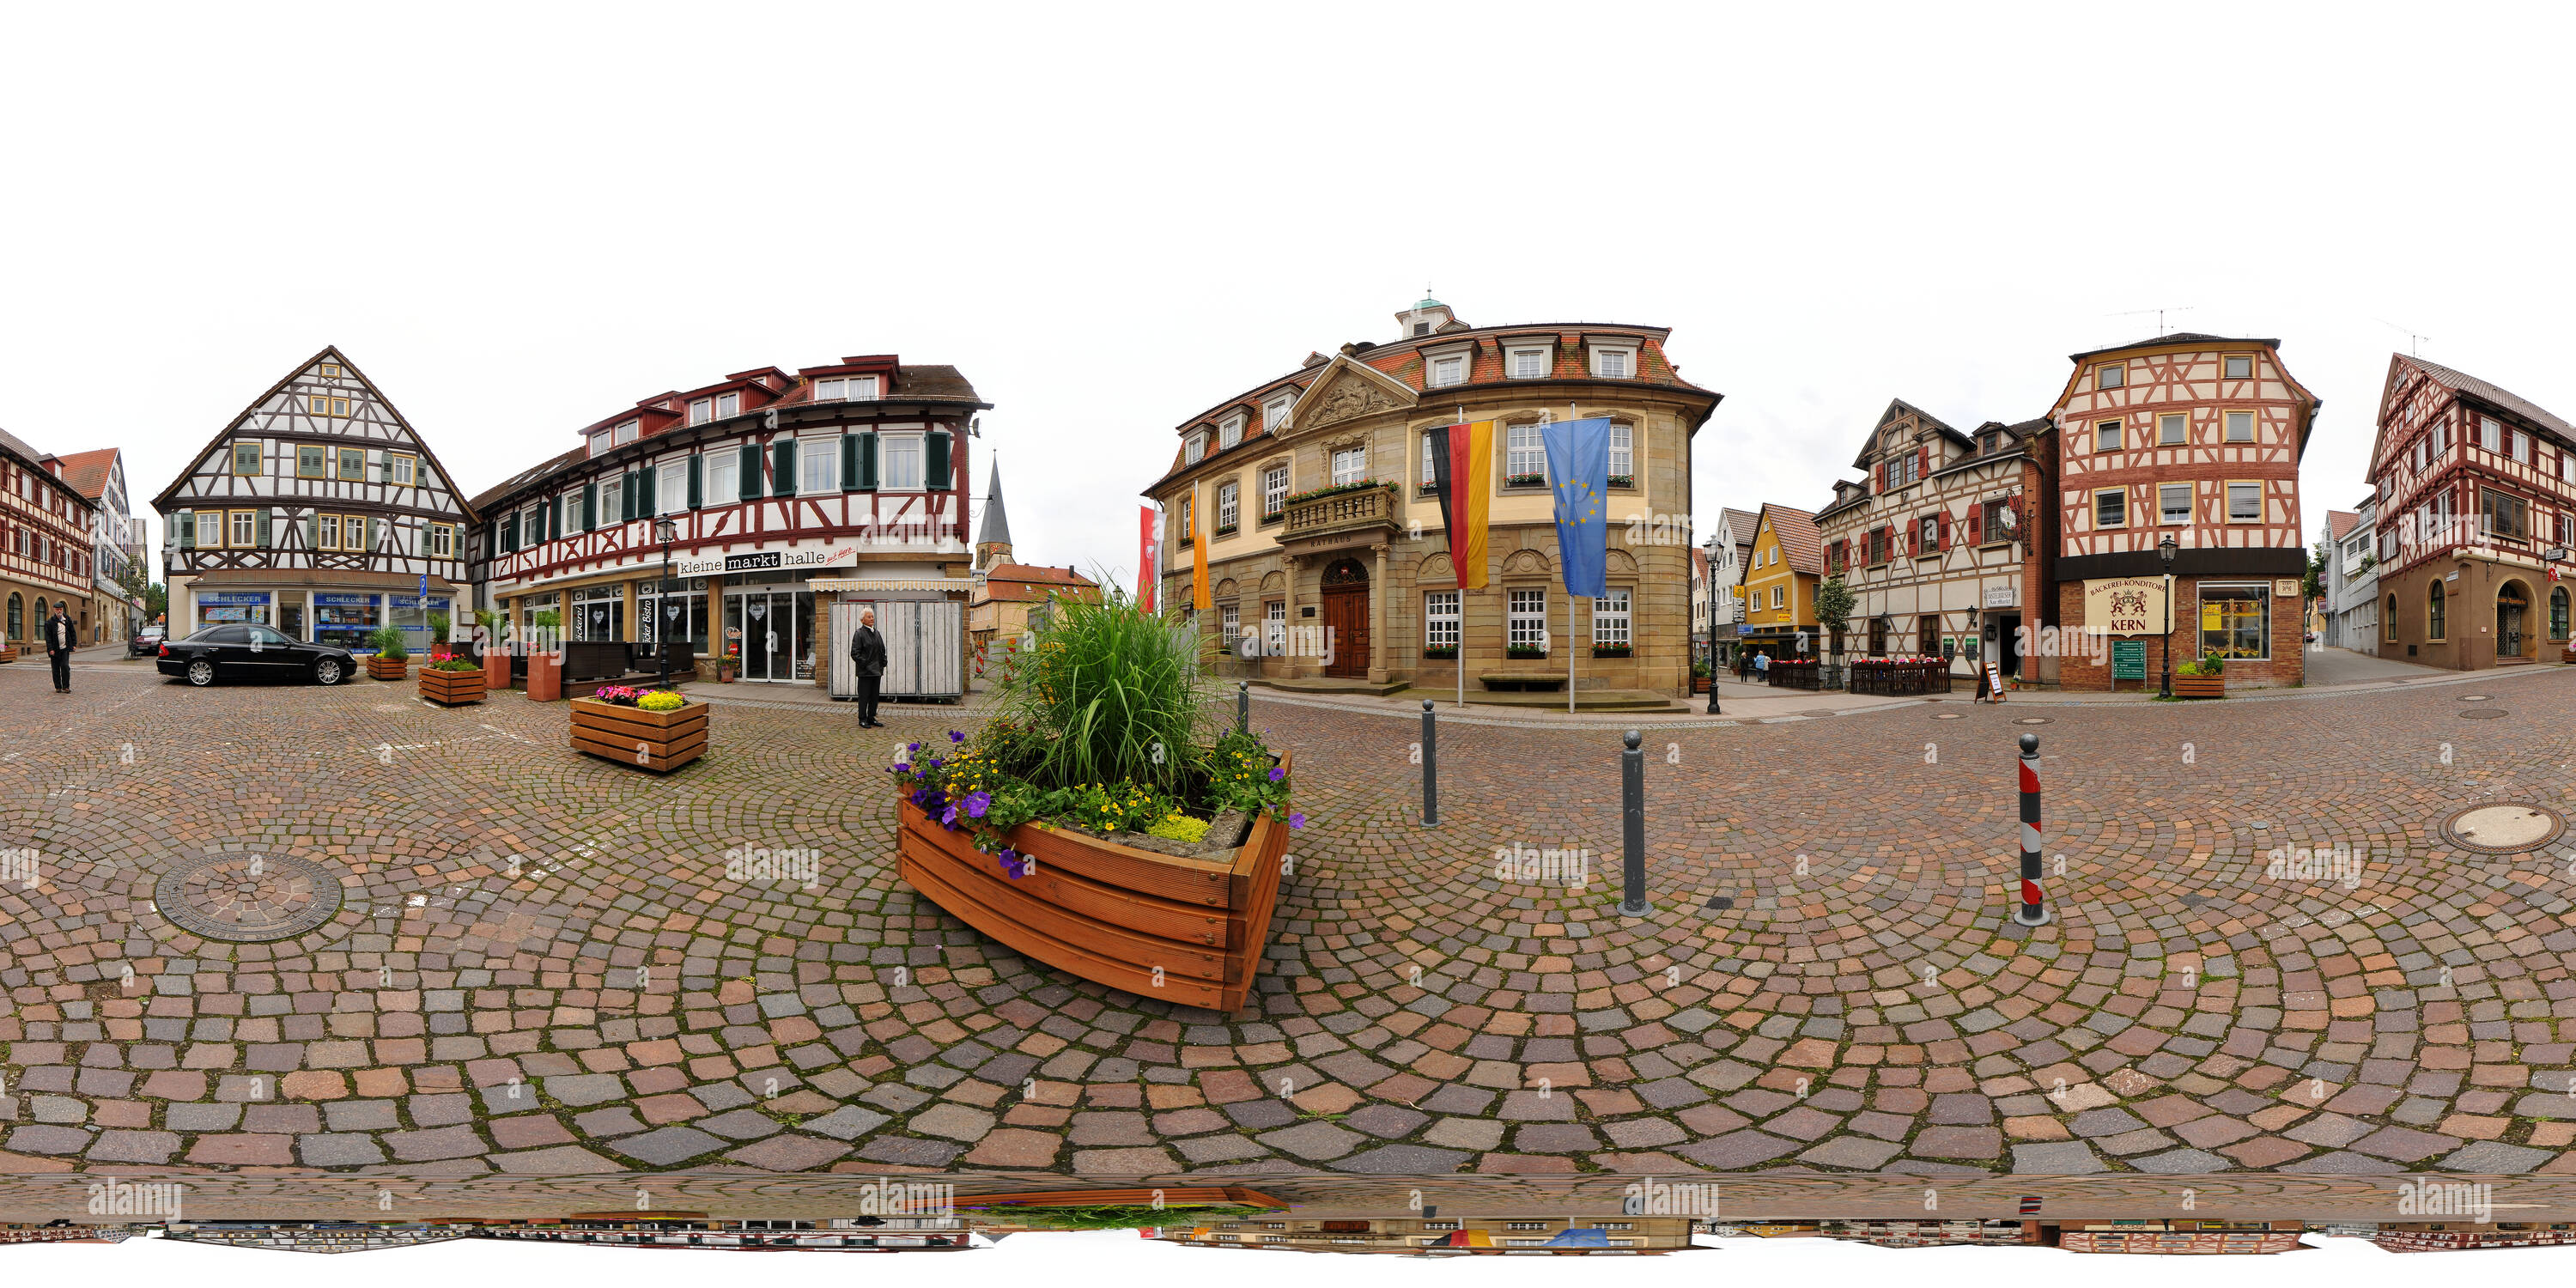 360 Grad Panorama Ansicht von Brackenheim, Rathaus und Marktplatz